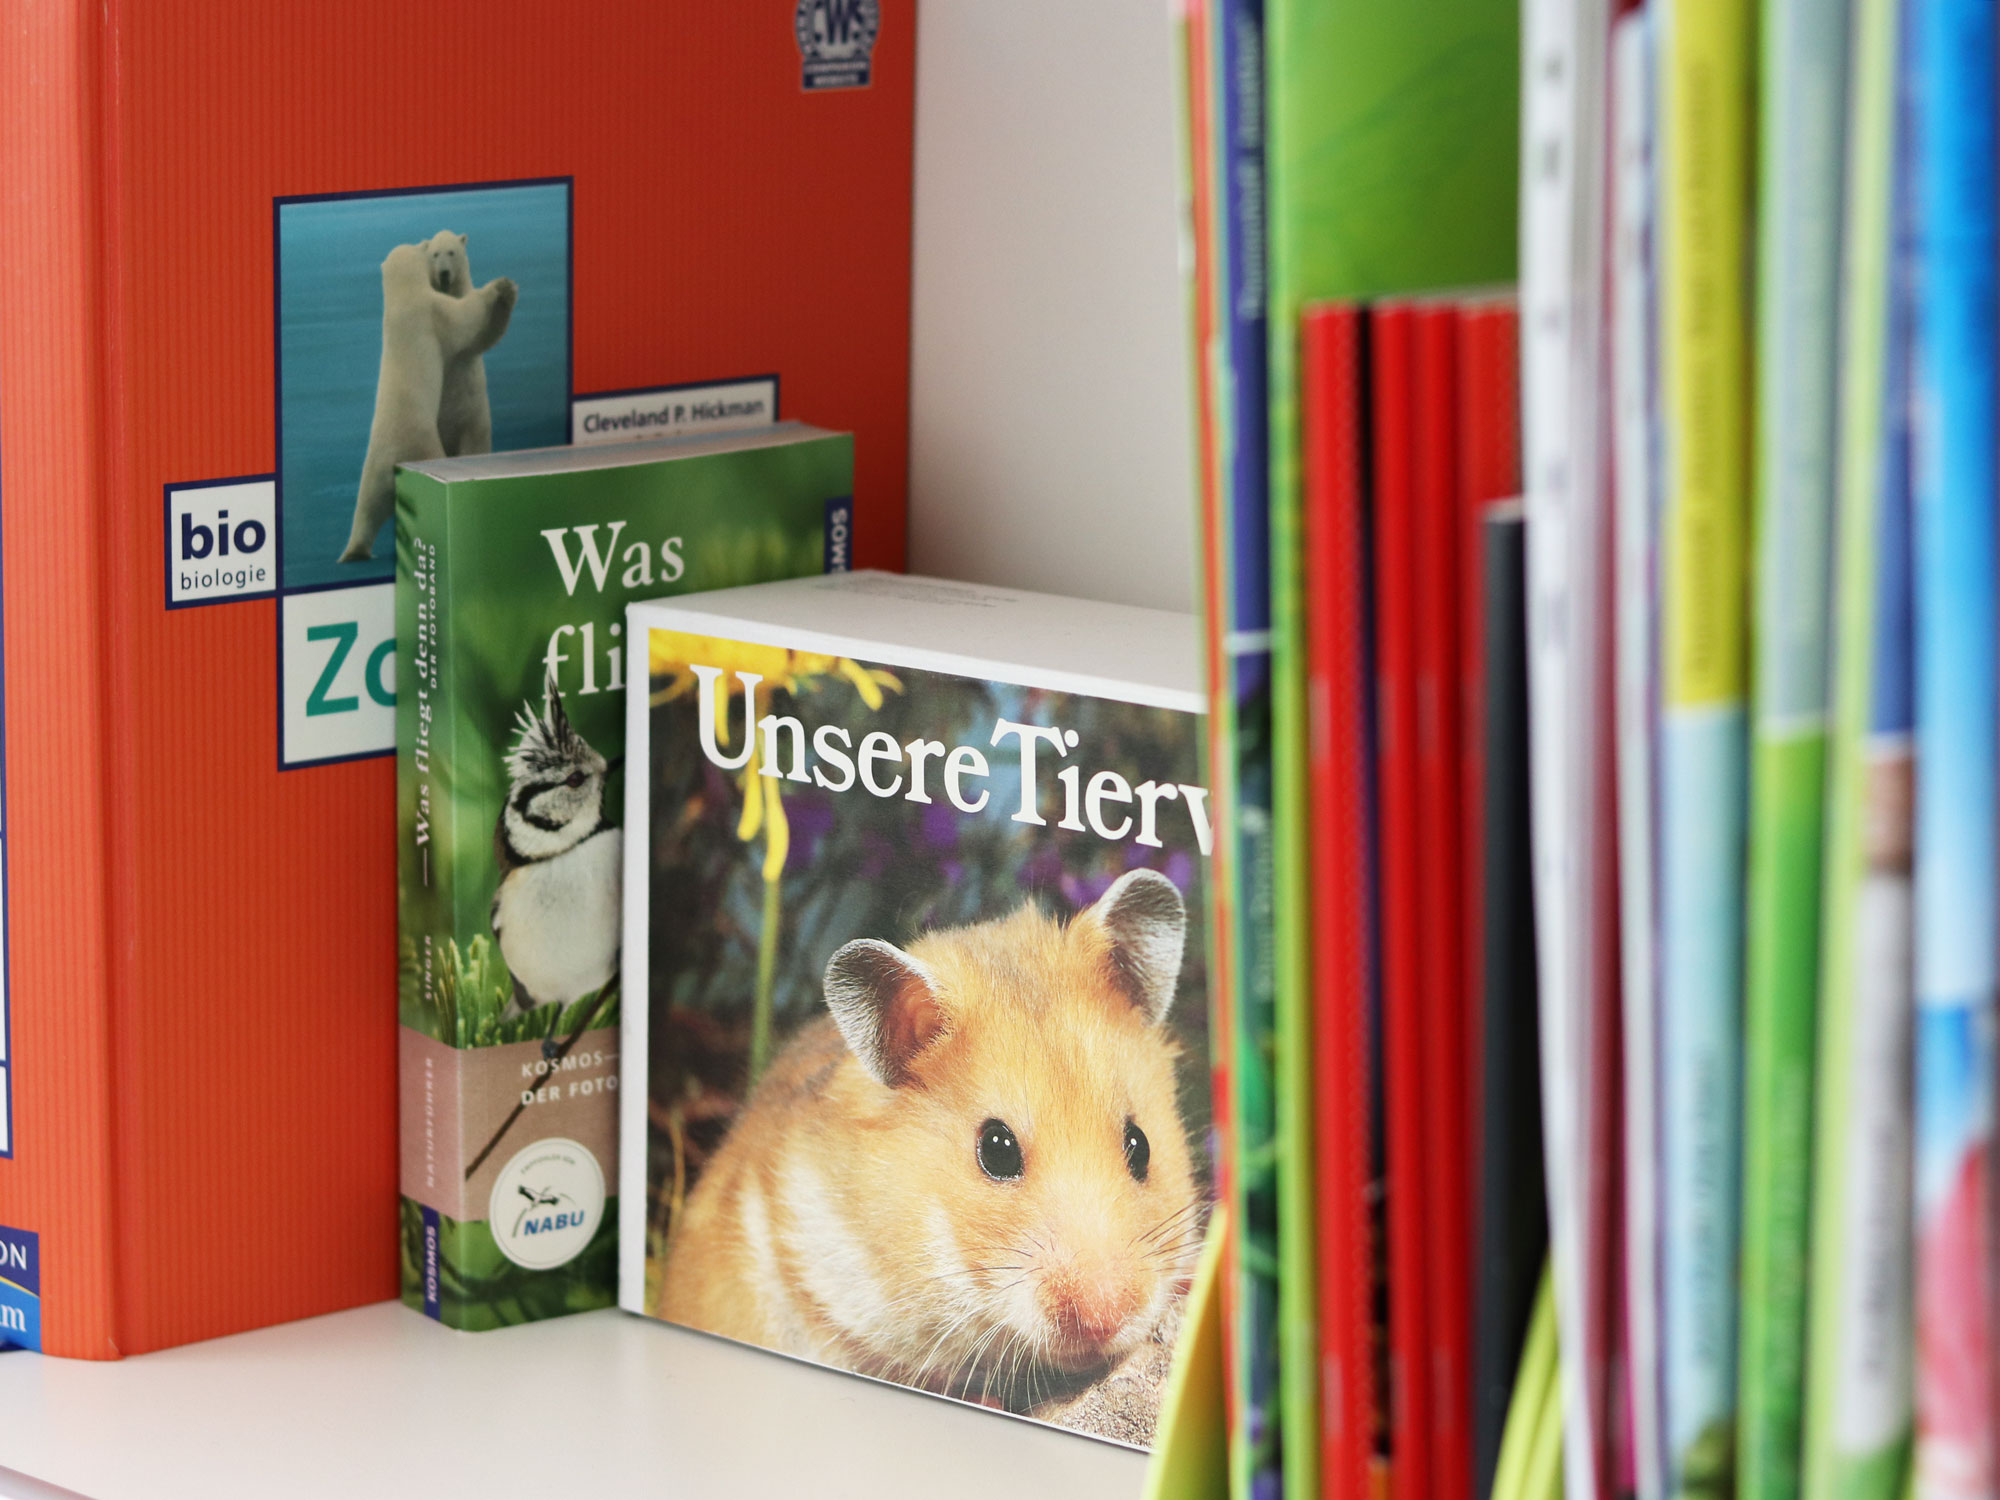 Ausschnitt der nach Themen sortierten Literatursammlung in einem Bücherregal, Fokus auf Bücher über die Tierwelt